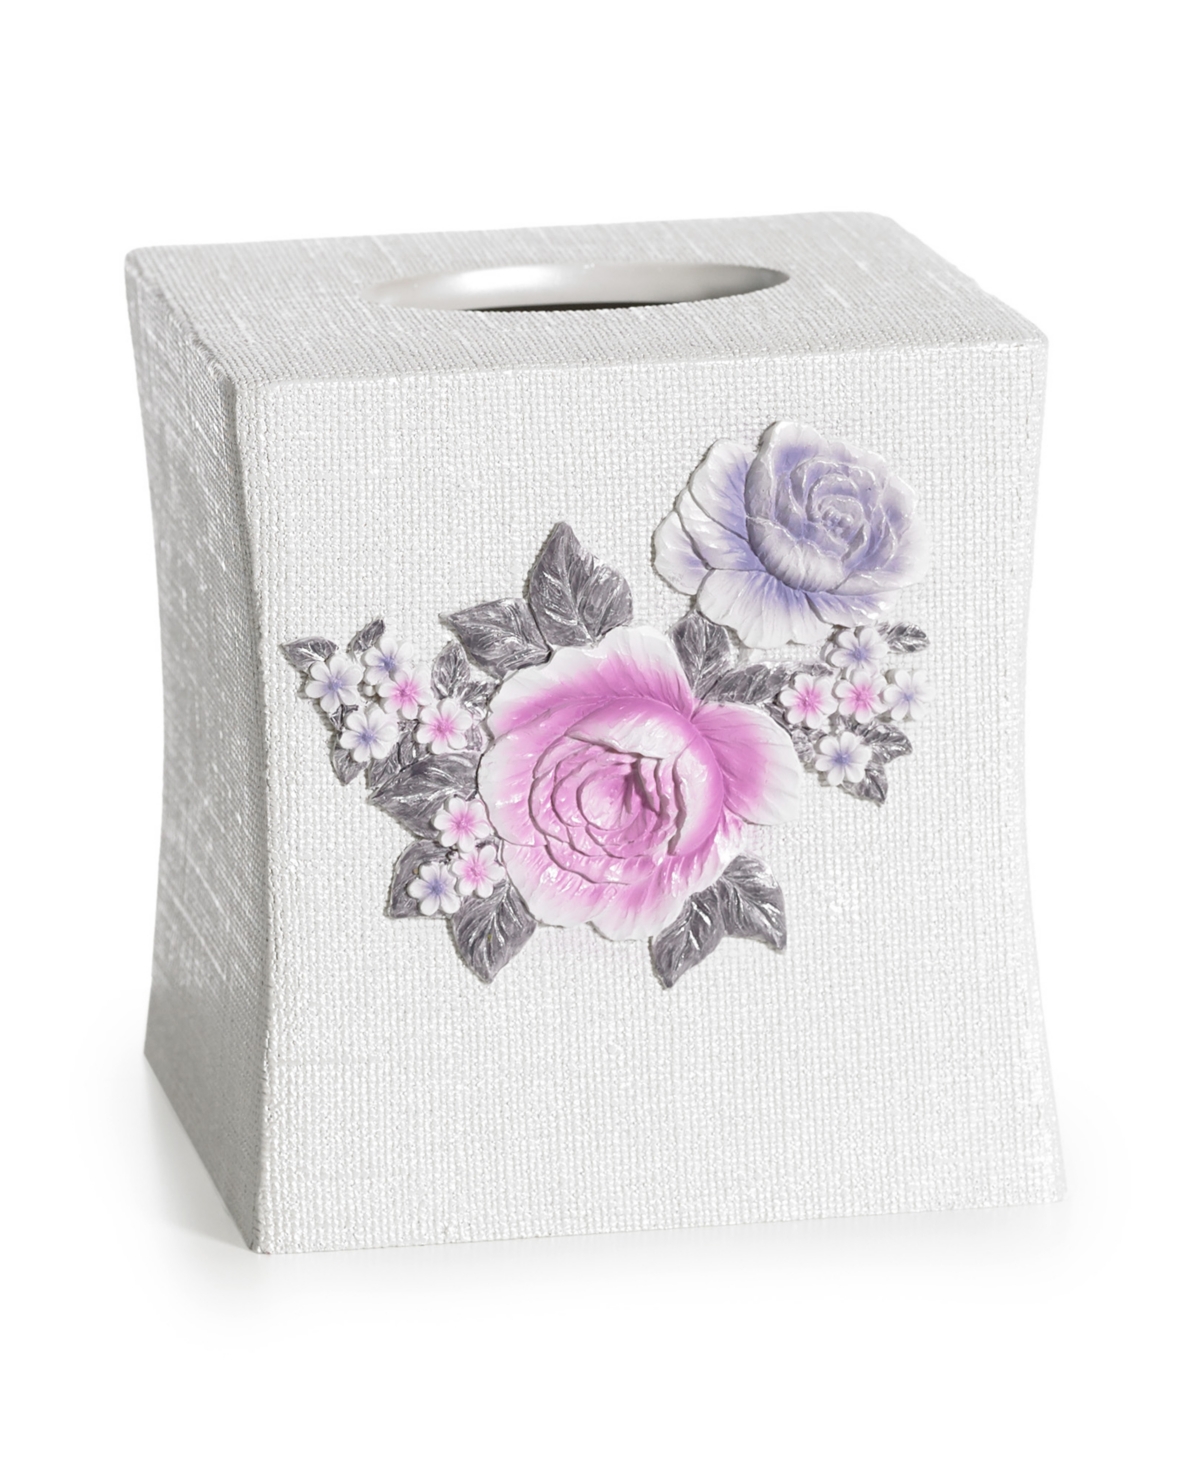 Michelle Tissue Box - Lilac